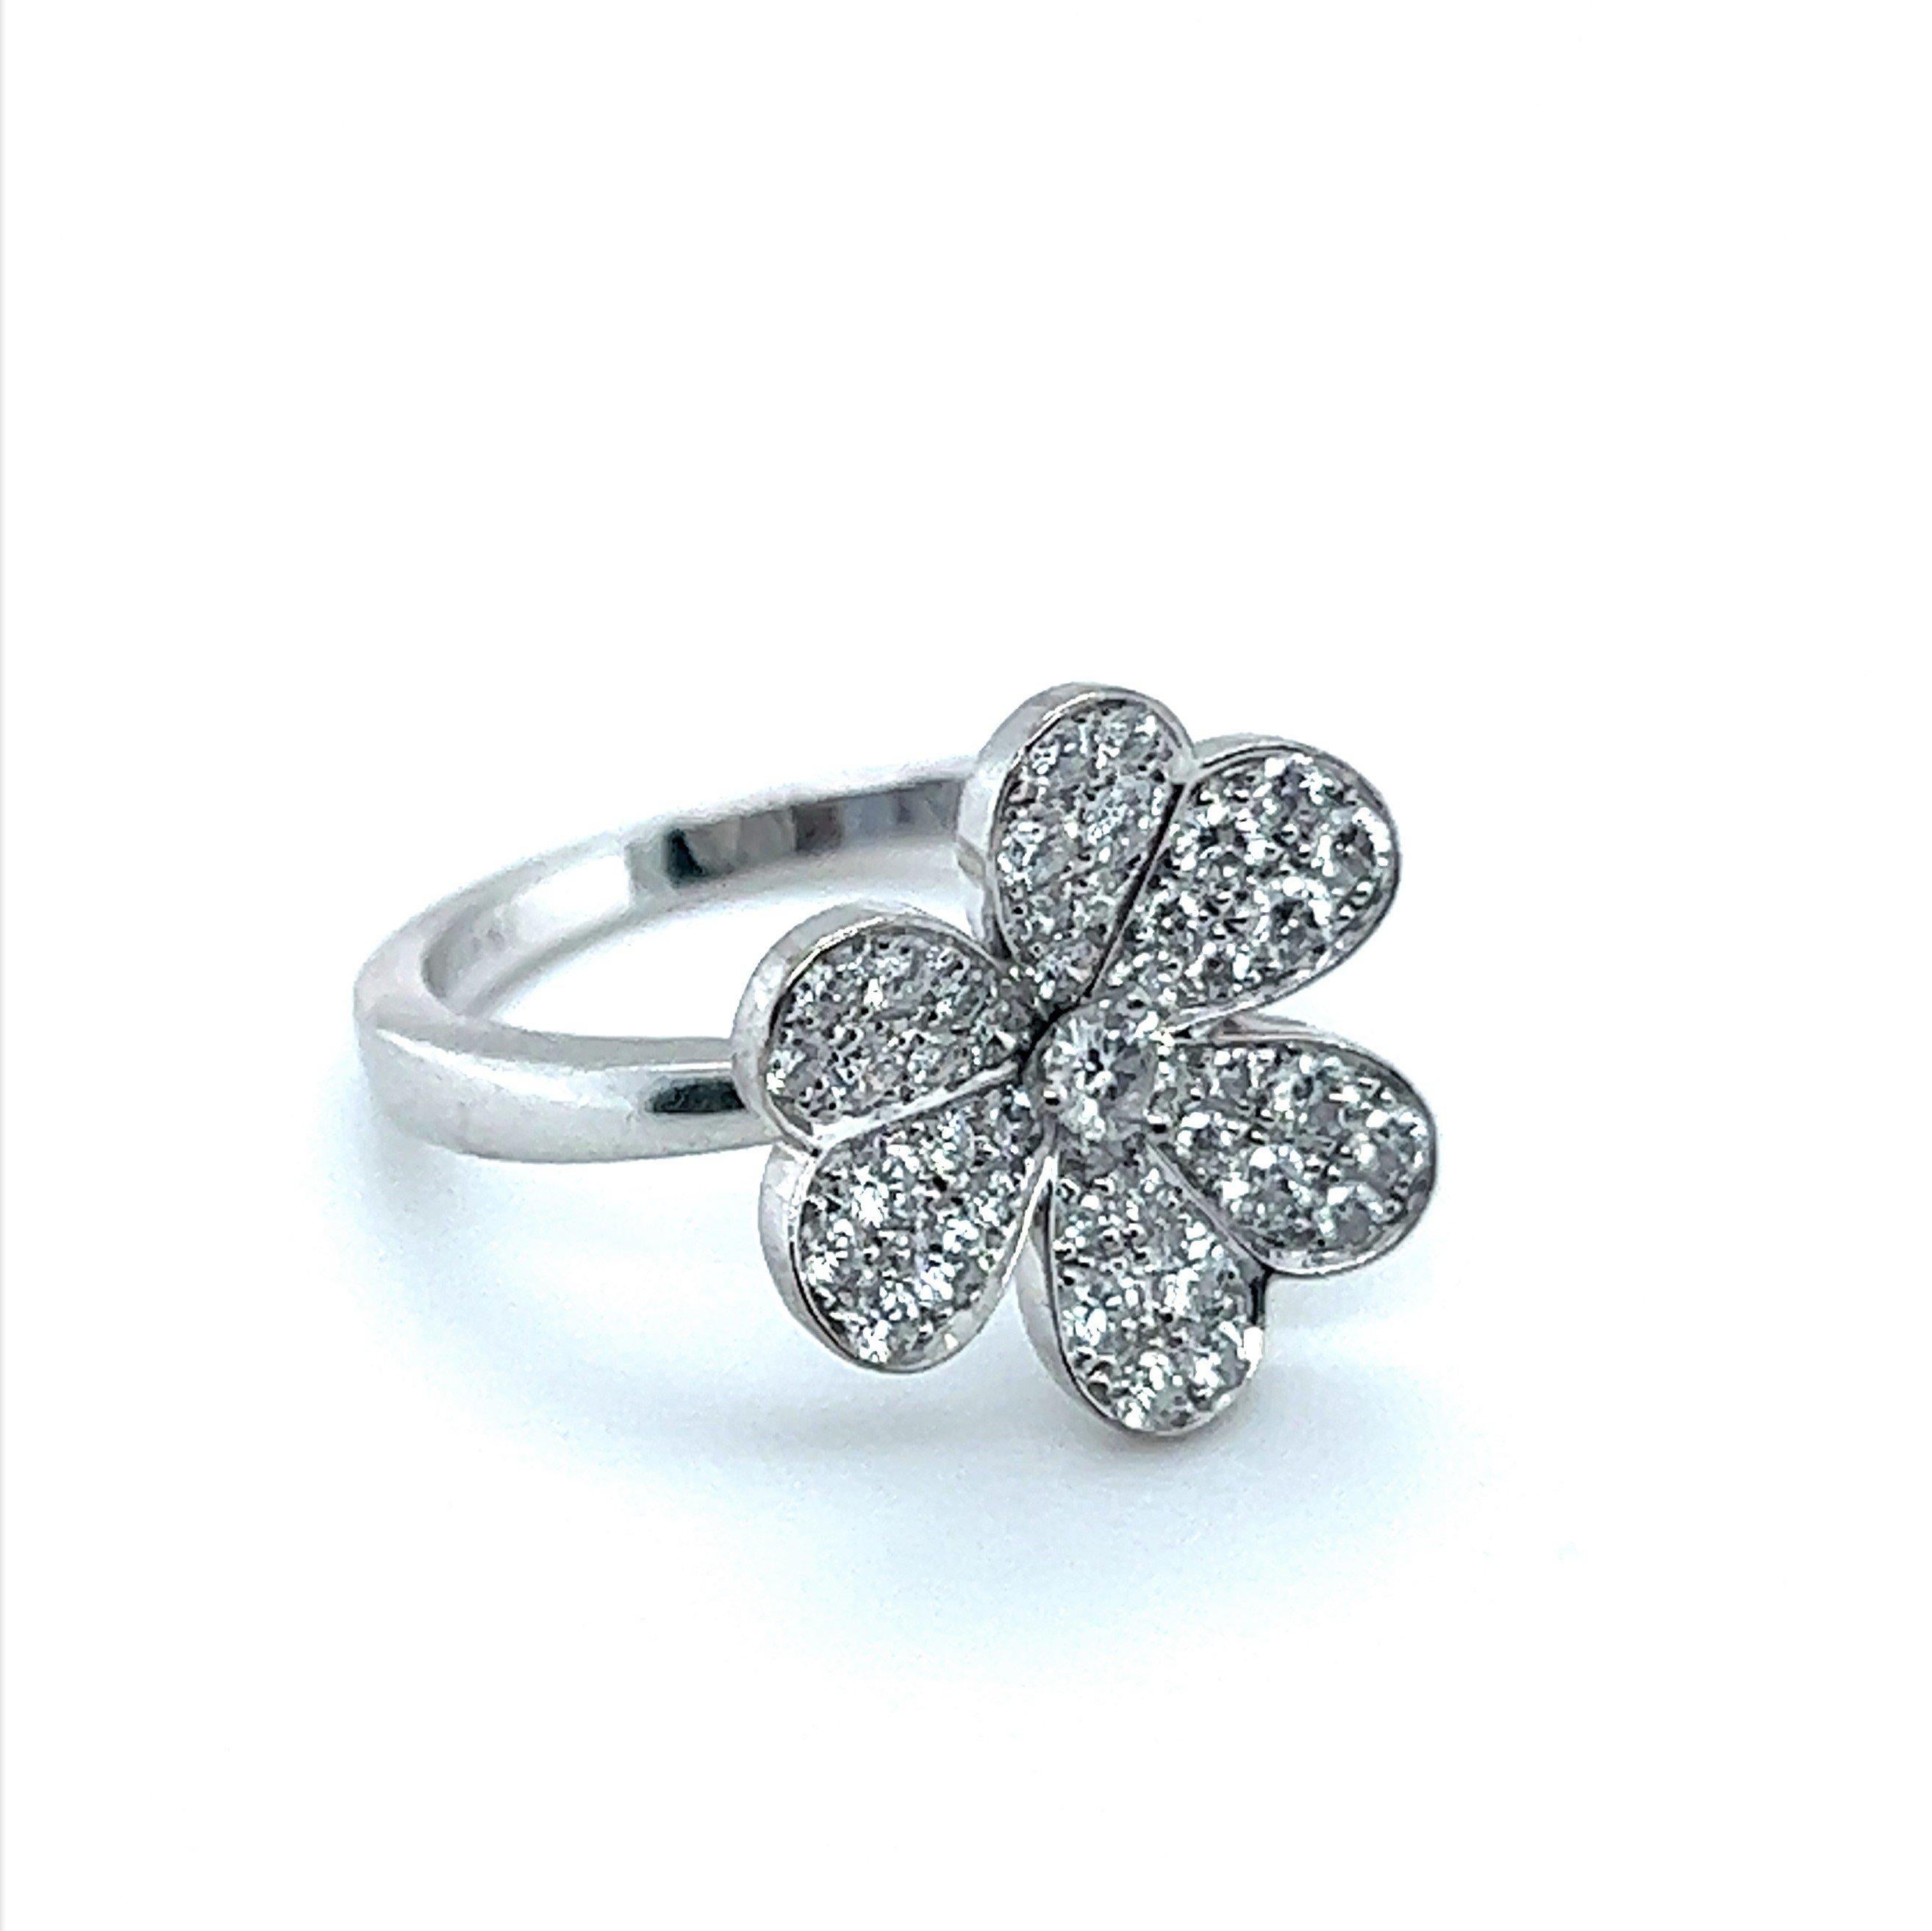 Artisan Van Cleef & Arpels Frivole Flower Diamond Ring in 18 Karat White Gold